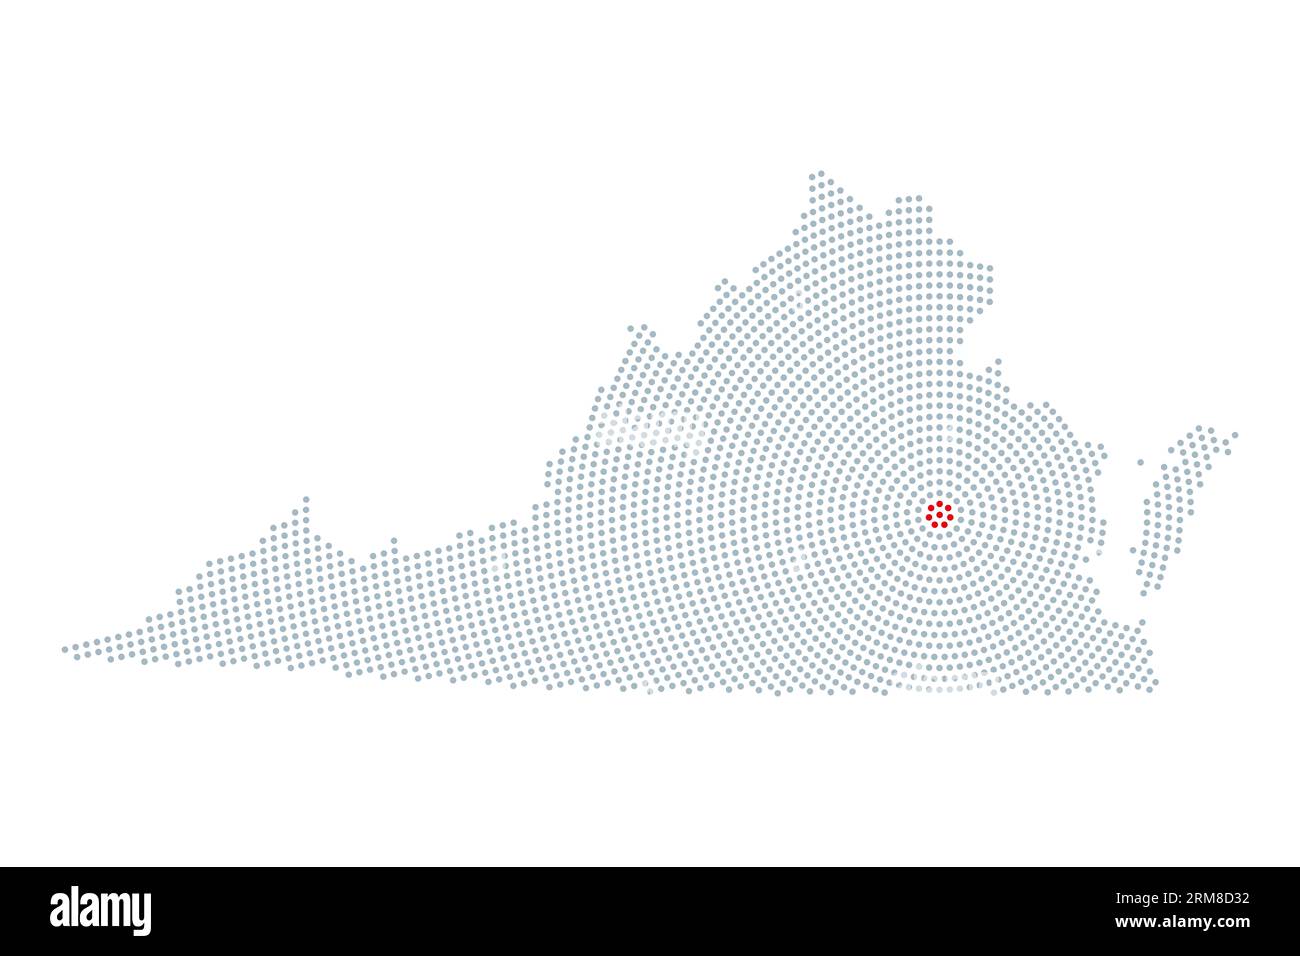 Virginia, Silhouette des US-Bundesstaates mit radialem Punktmuster. Umrisse des Commonwealth of Virginia, die aus grauen Punkten resultieren und in Kreisen angeordnet sind. Stockfoto